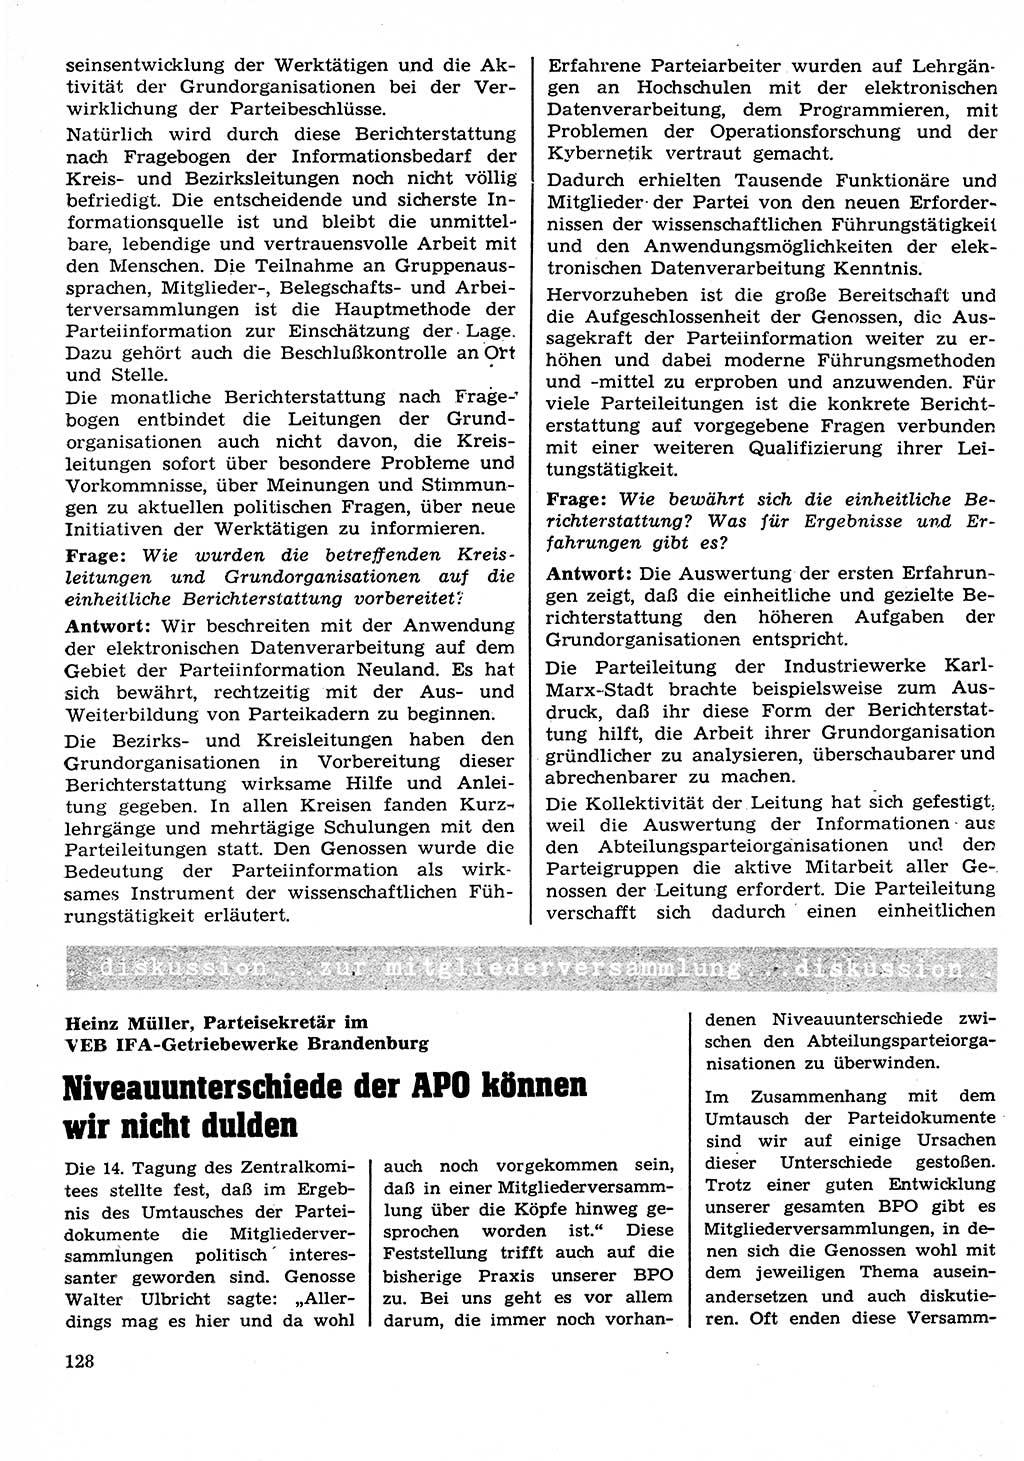 Neuer Weg (NW), Organ des Zentralkomitees (ZK) der SED (Sozialistische Einheitspartei Deutschlands) für Fragen des Parteilebens, 26. Jahrgang [Deutsche Demokratische Republik (DDR)] 1971, Seite 128 (NW ZK SED DDR 1971, S. 128)